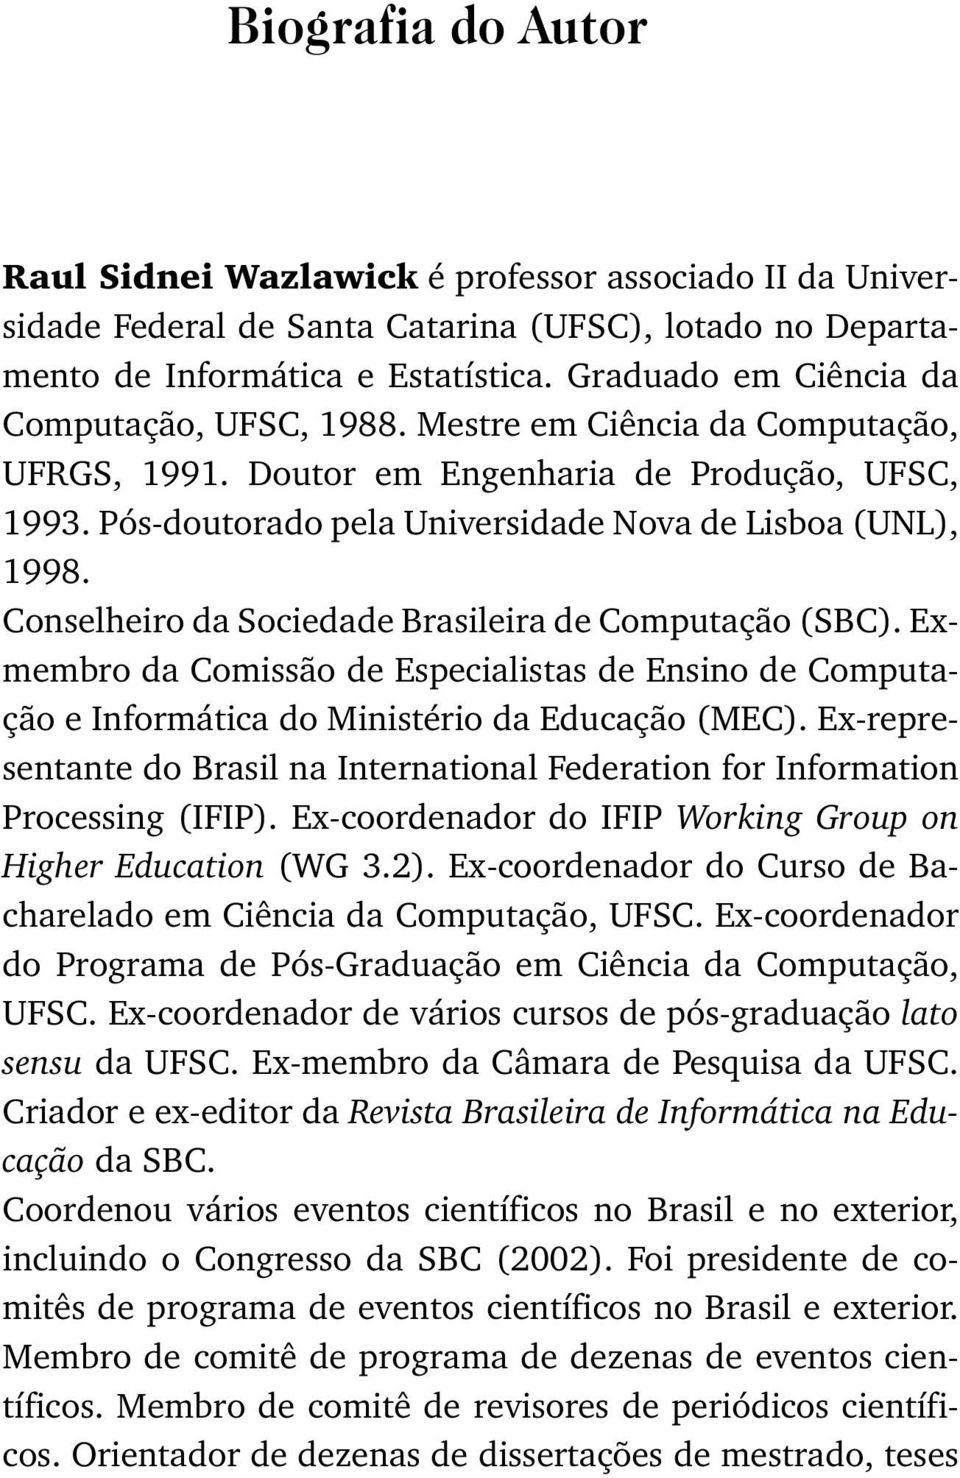 Conselheiro da Sociedade Brasileira de Computação (SBC). Exmembro da Comissão de Especialistas de Ensino de Computação e Informática do Ministério da Educação (MEC).